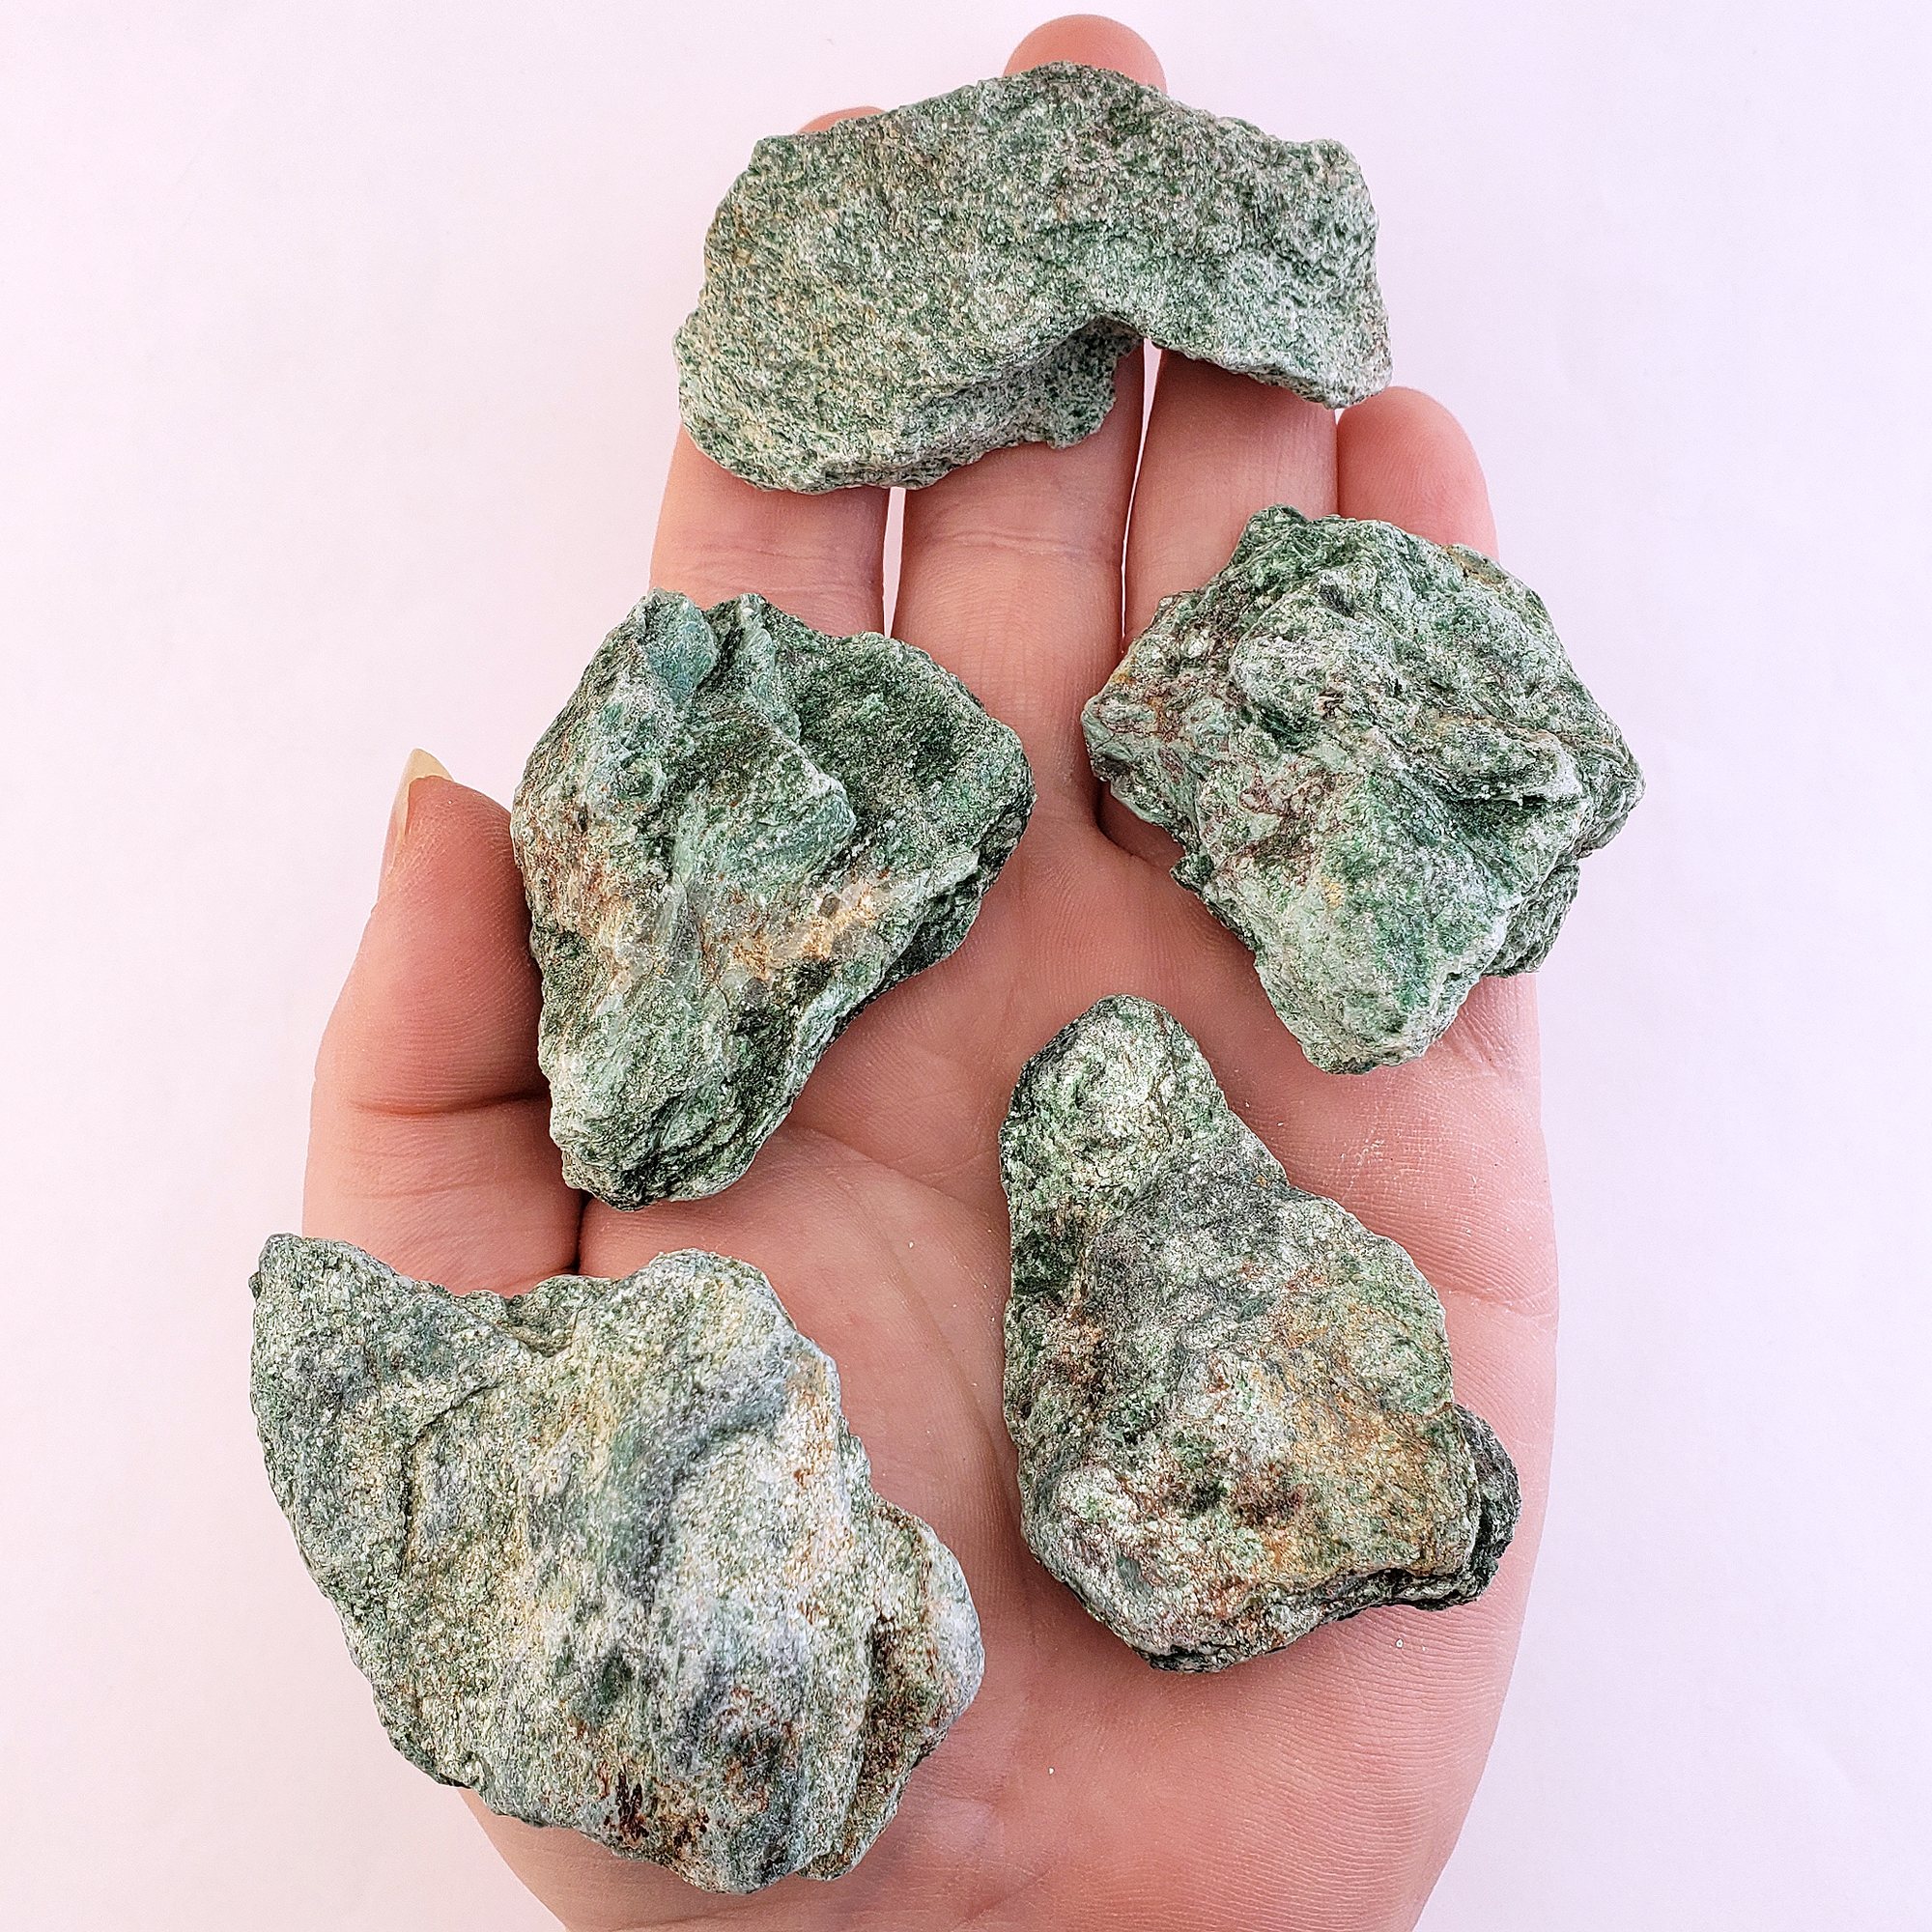 Raw Fuchsite Muscovite Mica Natural Rough Gemstone - Medium One Stone - Hand White Background